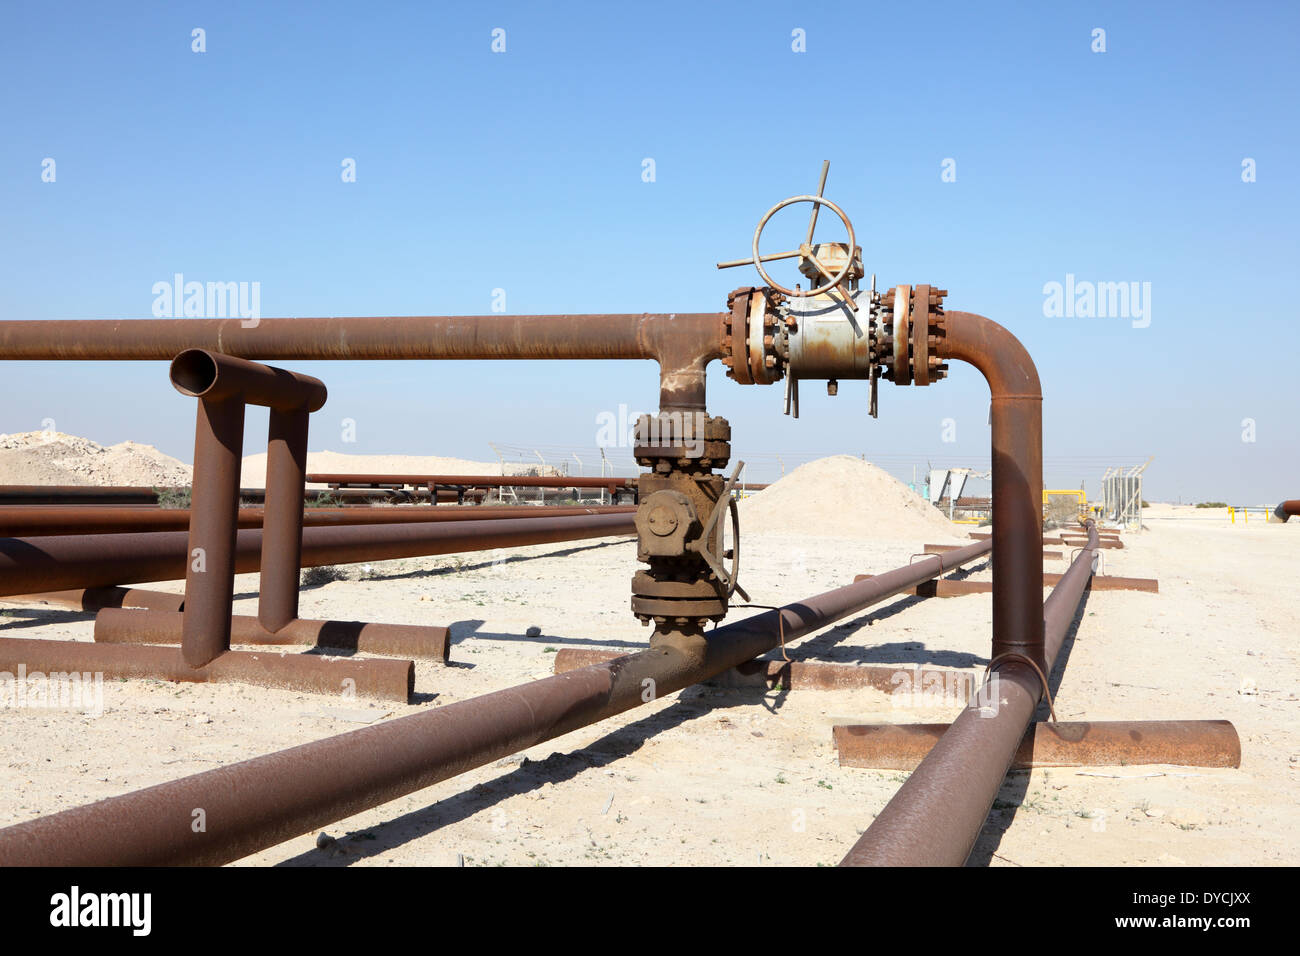 Oil pipeline in the desert of Bahrain. Middle East Stock Photo